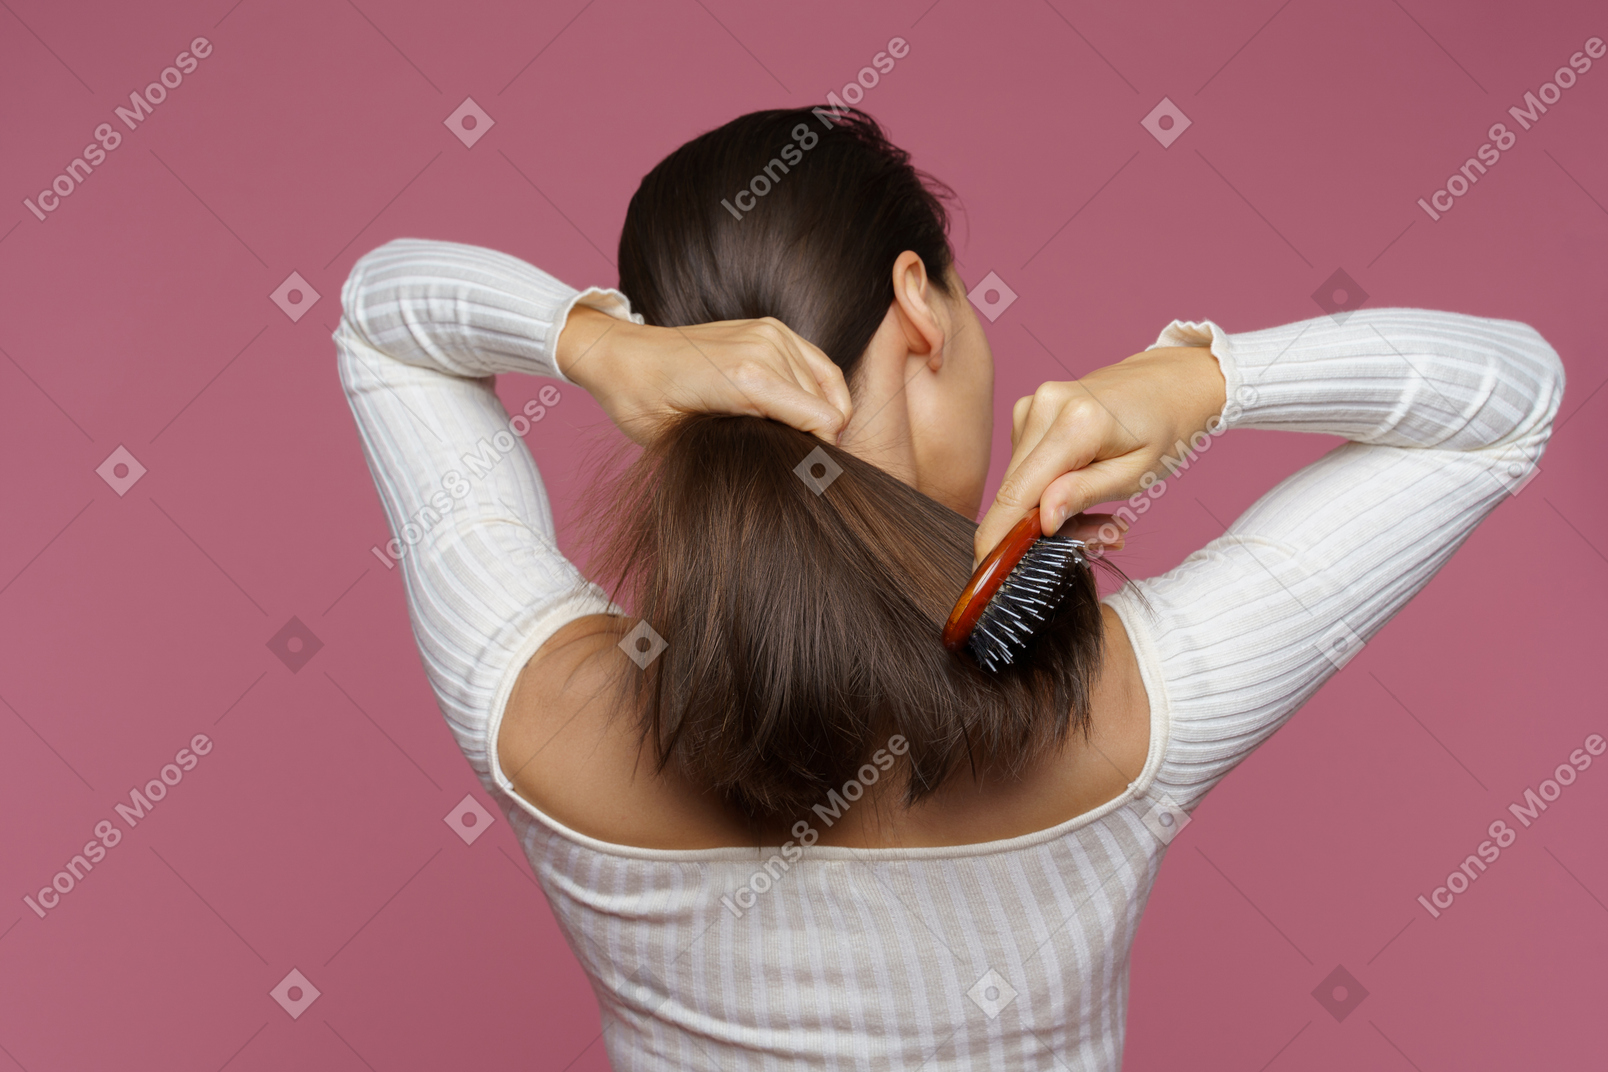 Vista traseira de uma mulher de cabelo castanho penteando o cabelo